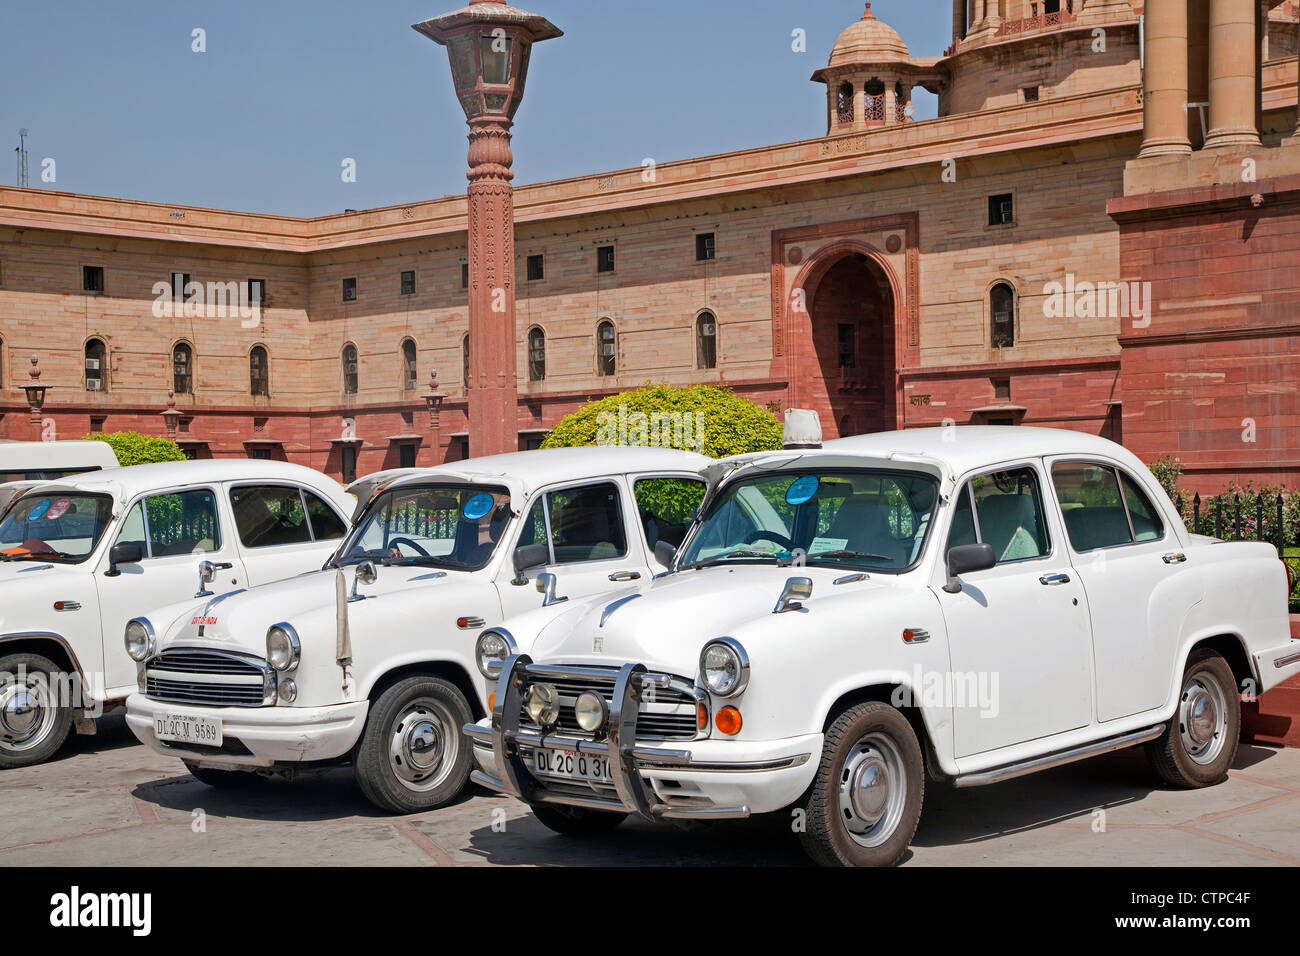 Traditionelle alte altmodische weiße indischen Autos in Rashtrapati Bhavan, offizielle Residenz des Präsidenten von Indien in New Delhi Stockfoto